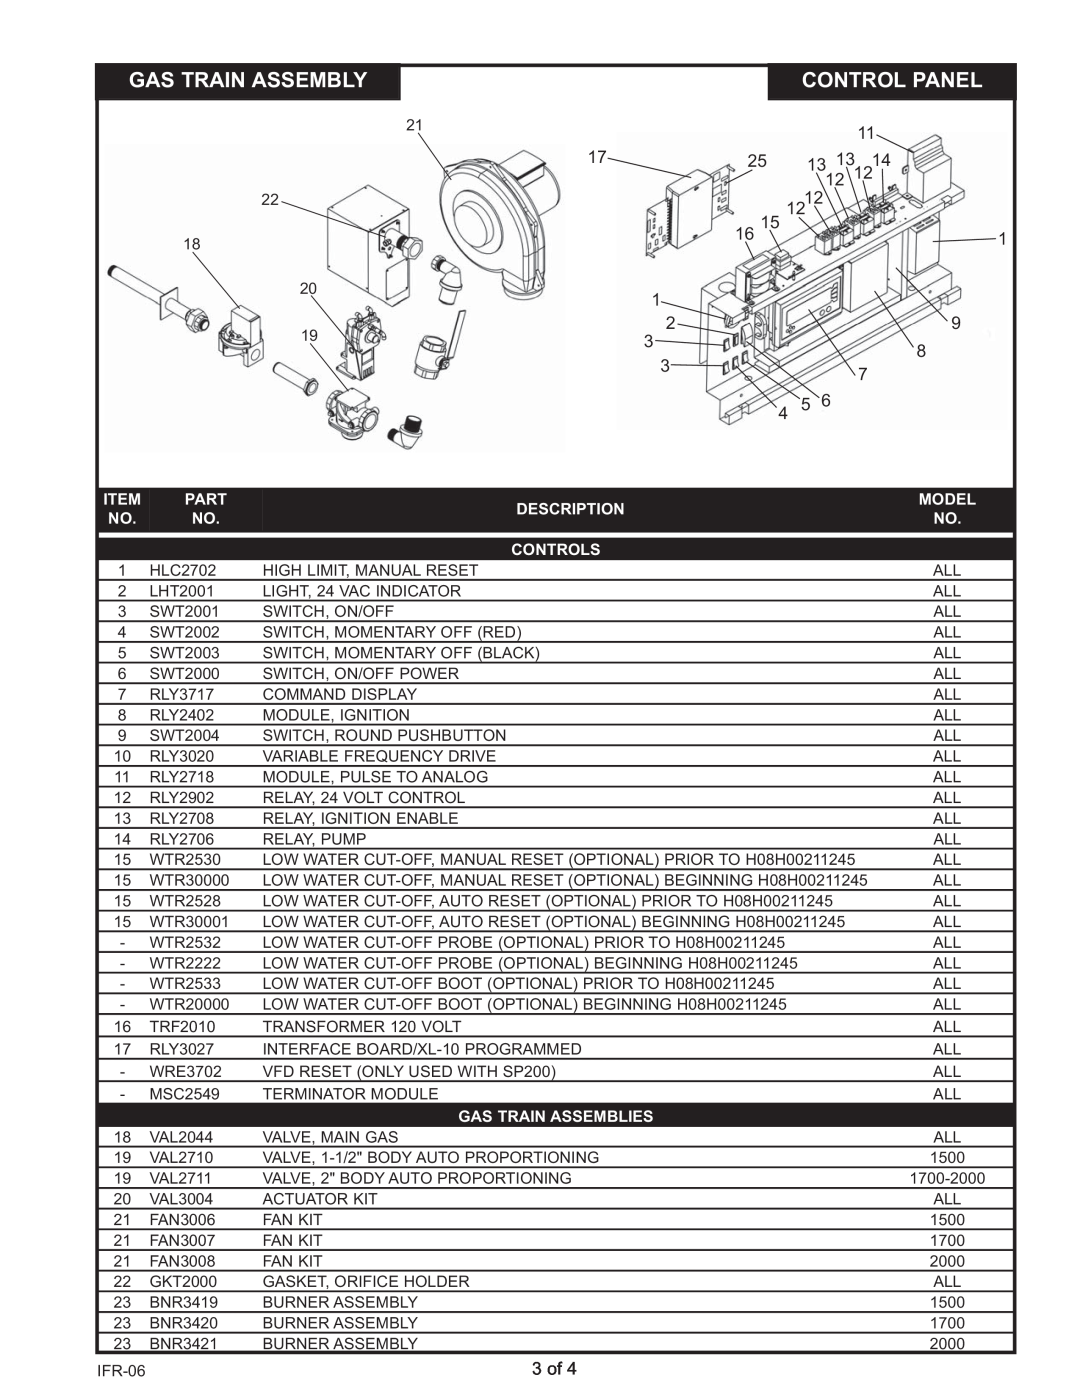 Lochinvar IW 2000, IB 1700, IB 1500, IW 1700, IB 2000, IW 1500 manual Gas Train Assembly, Control Panel, 1312, 1214, 3 of 